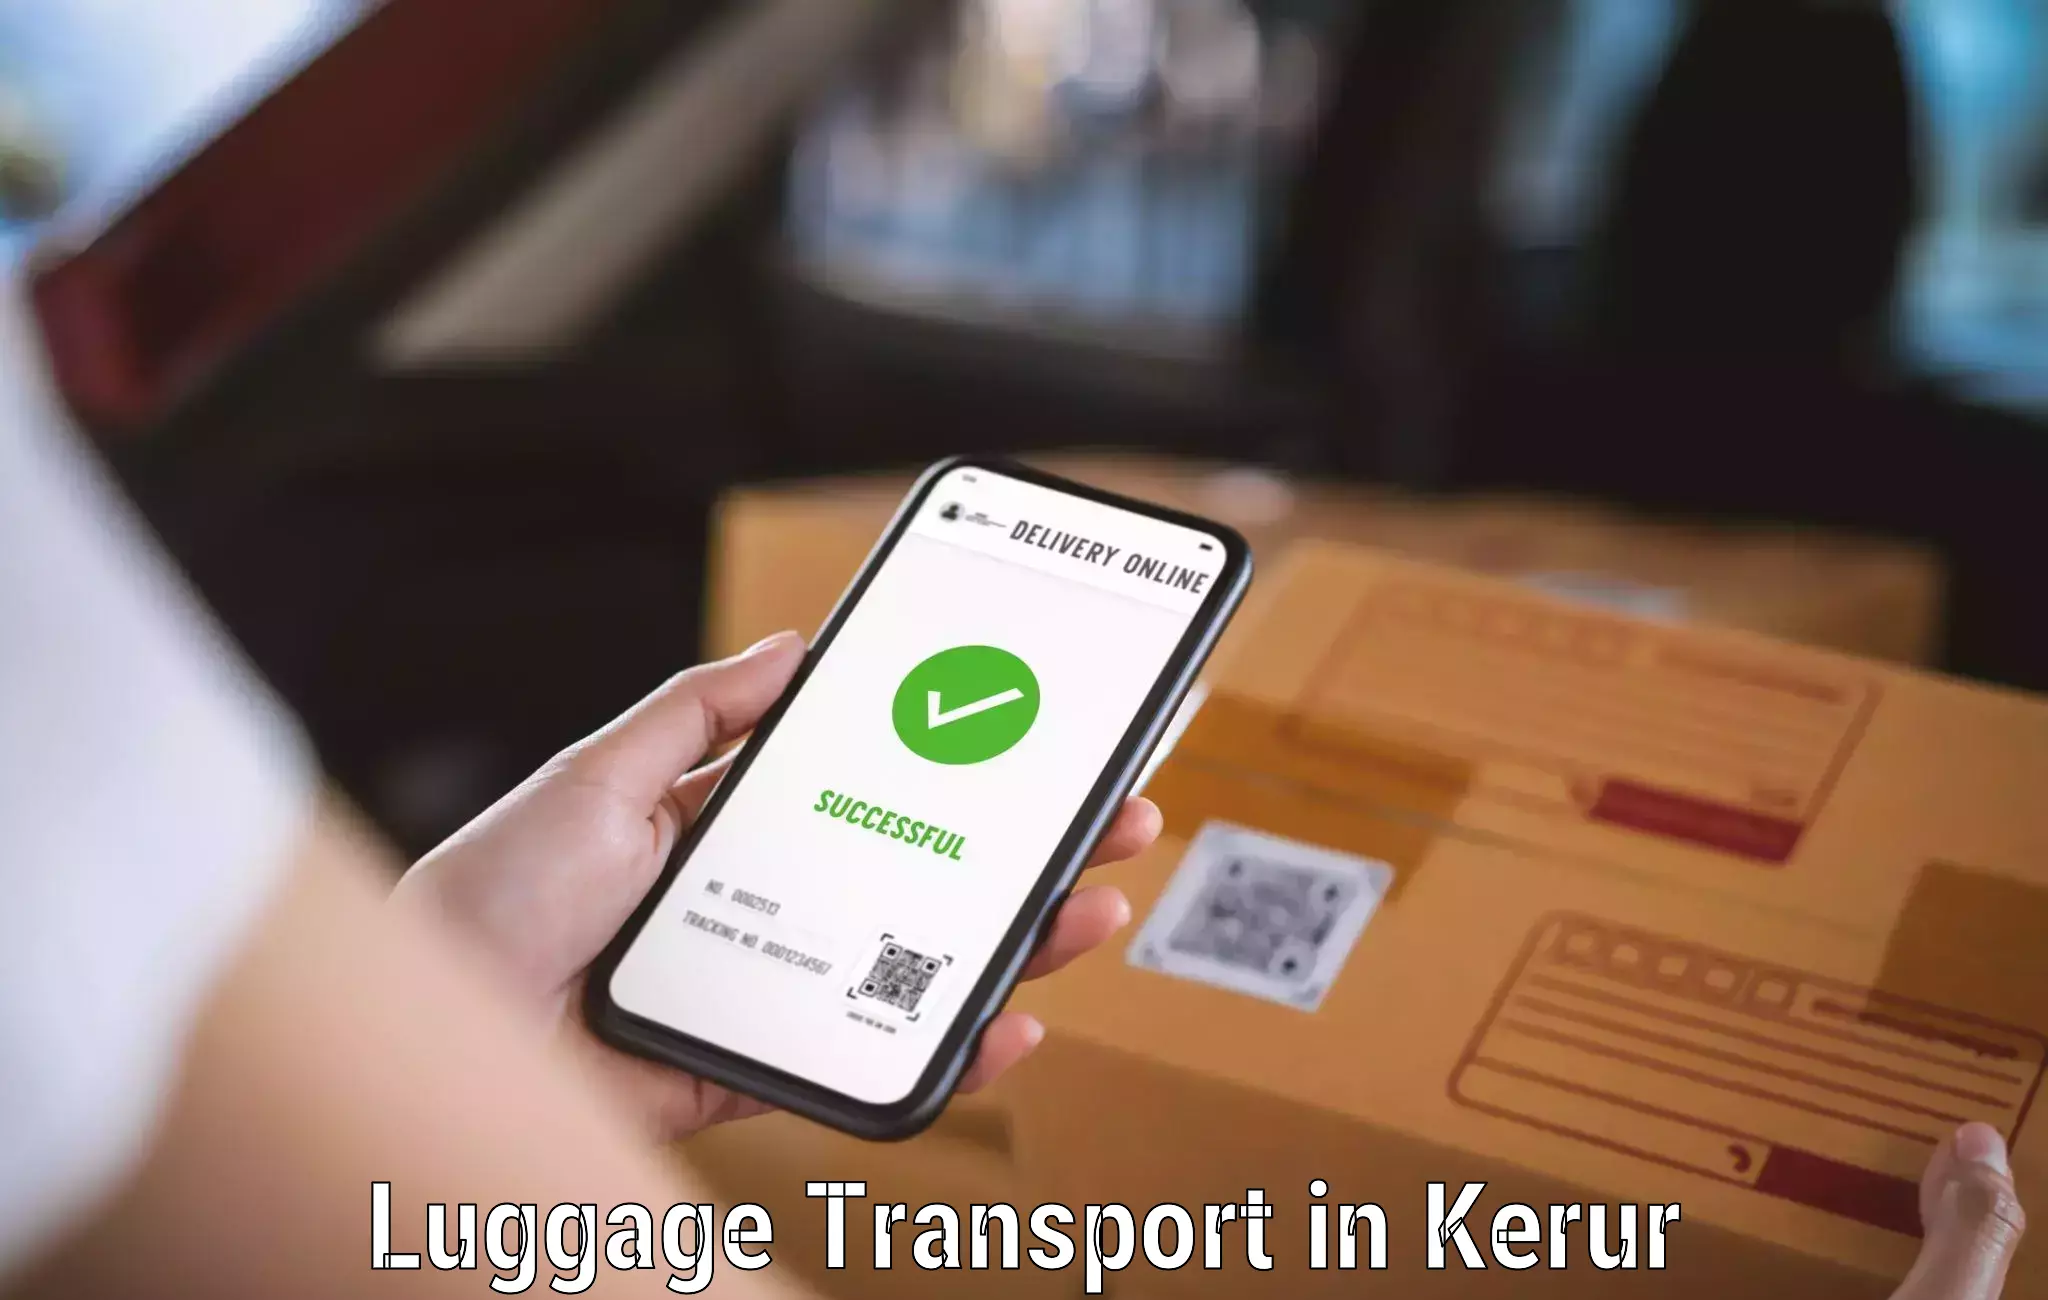 Same day baggage transport in Kerur